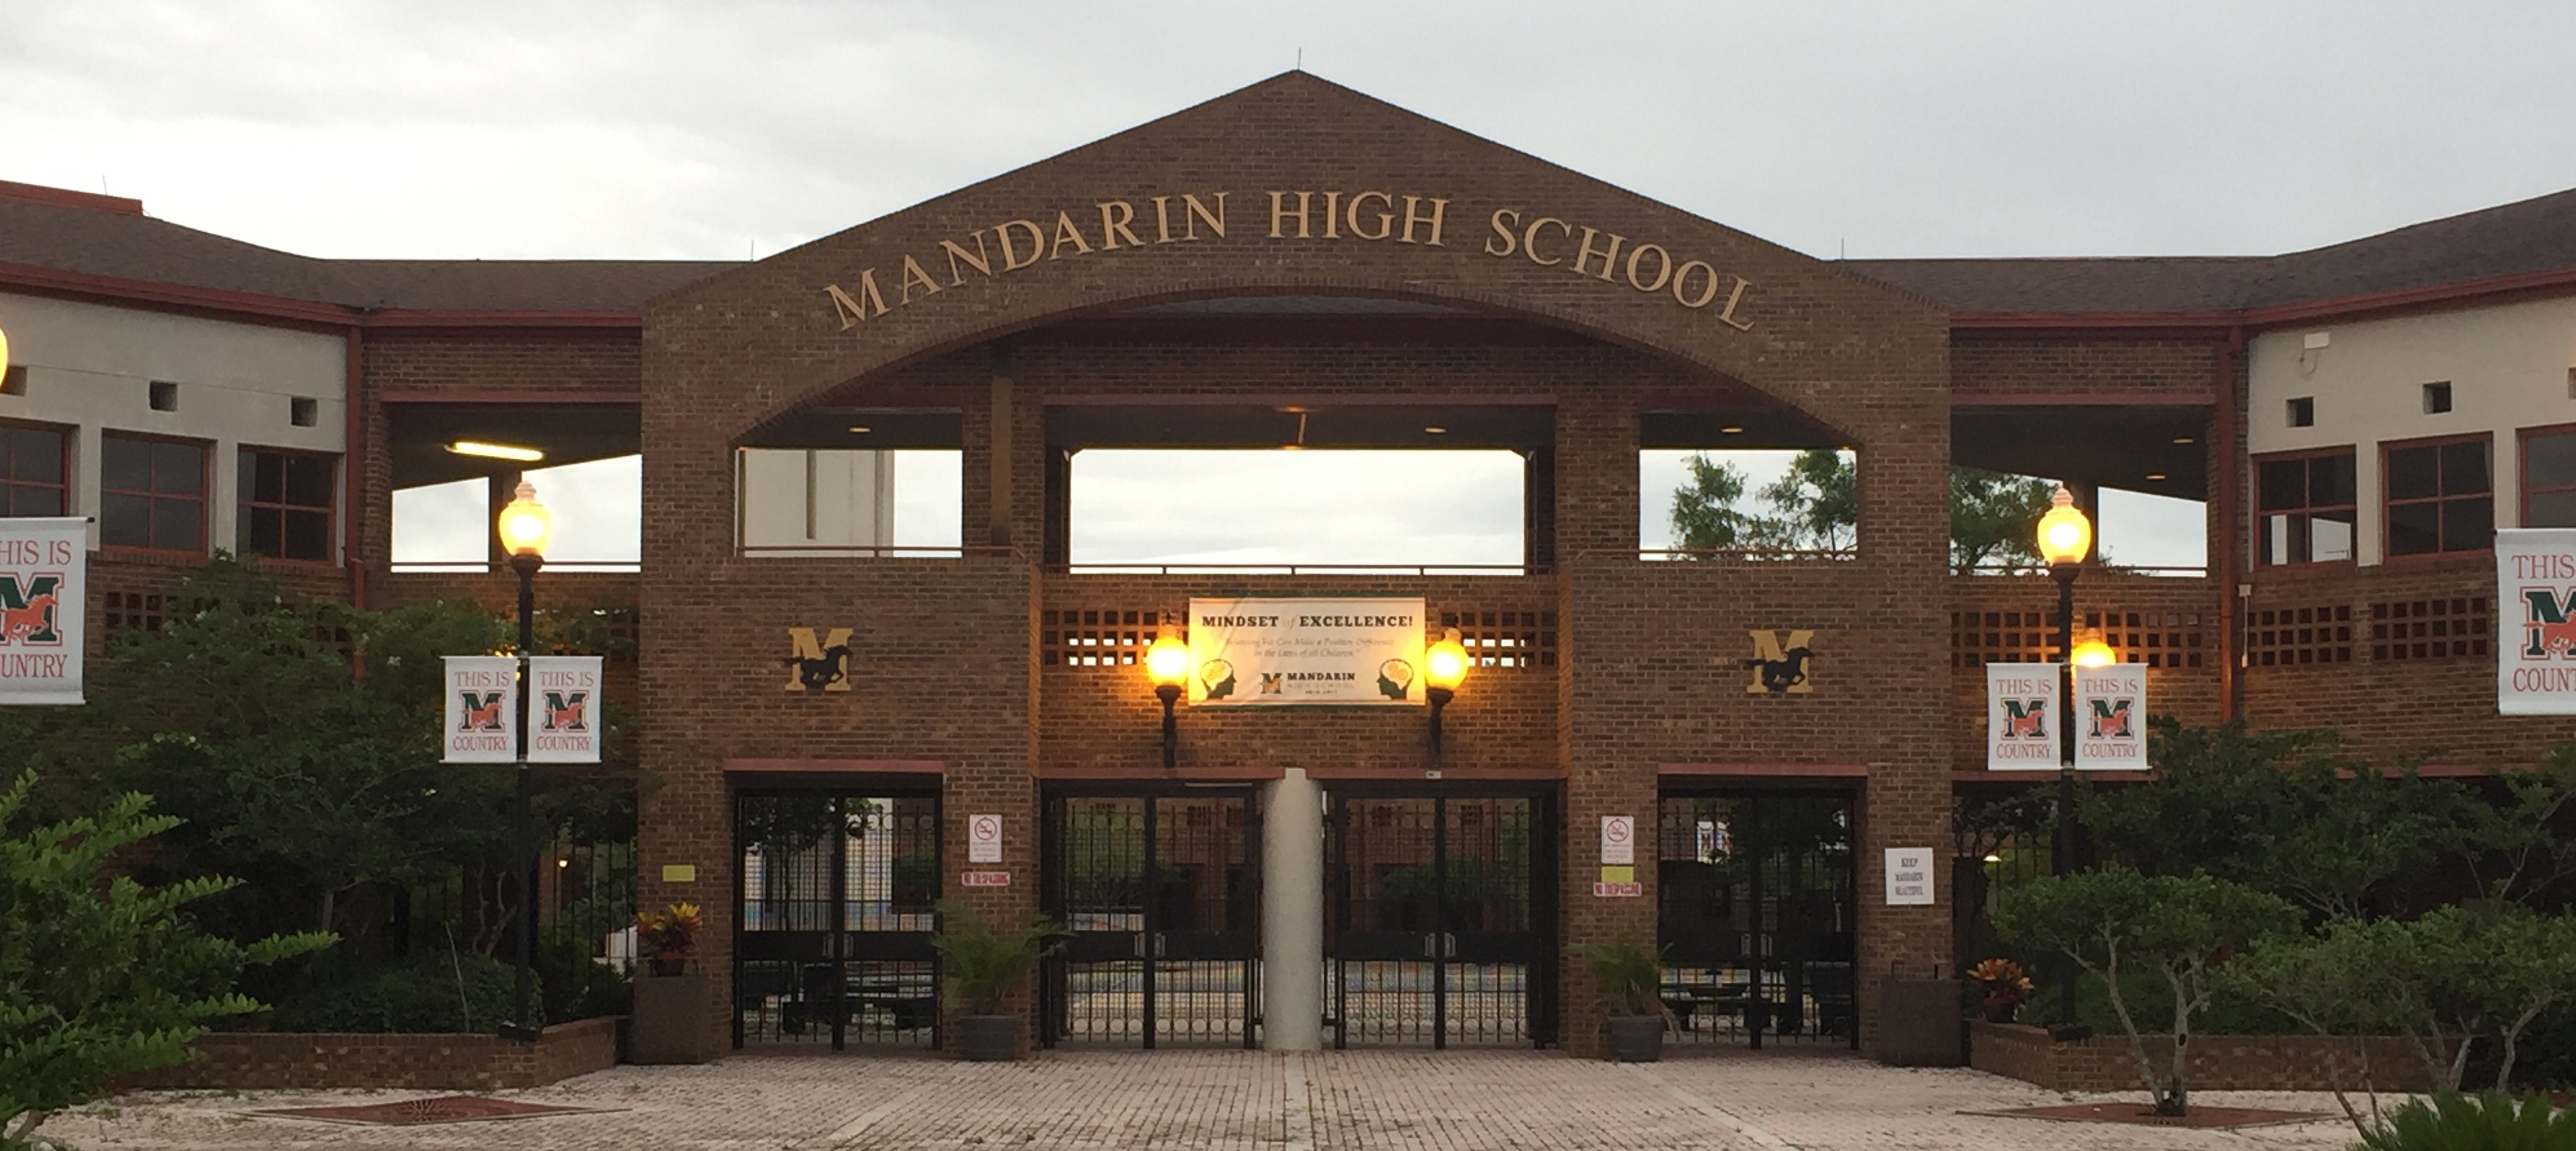 Mandarin High School front of school